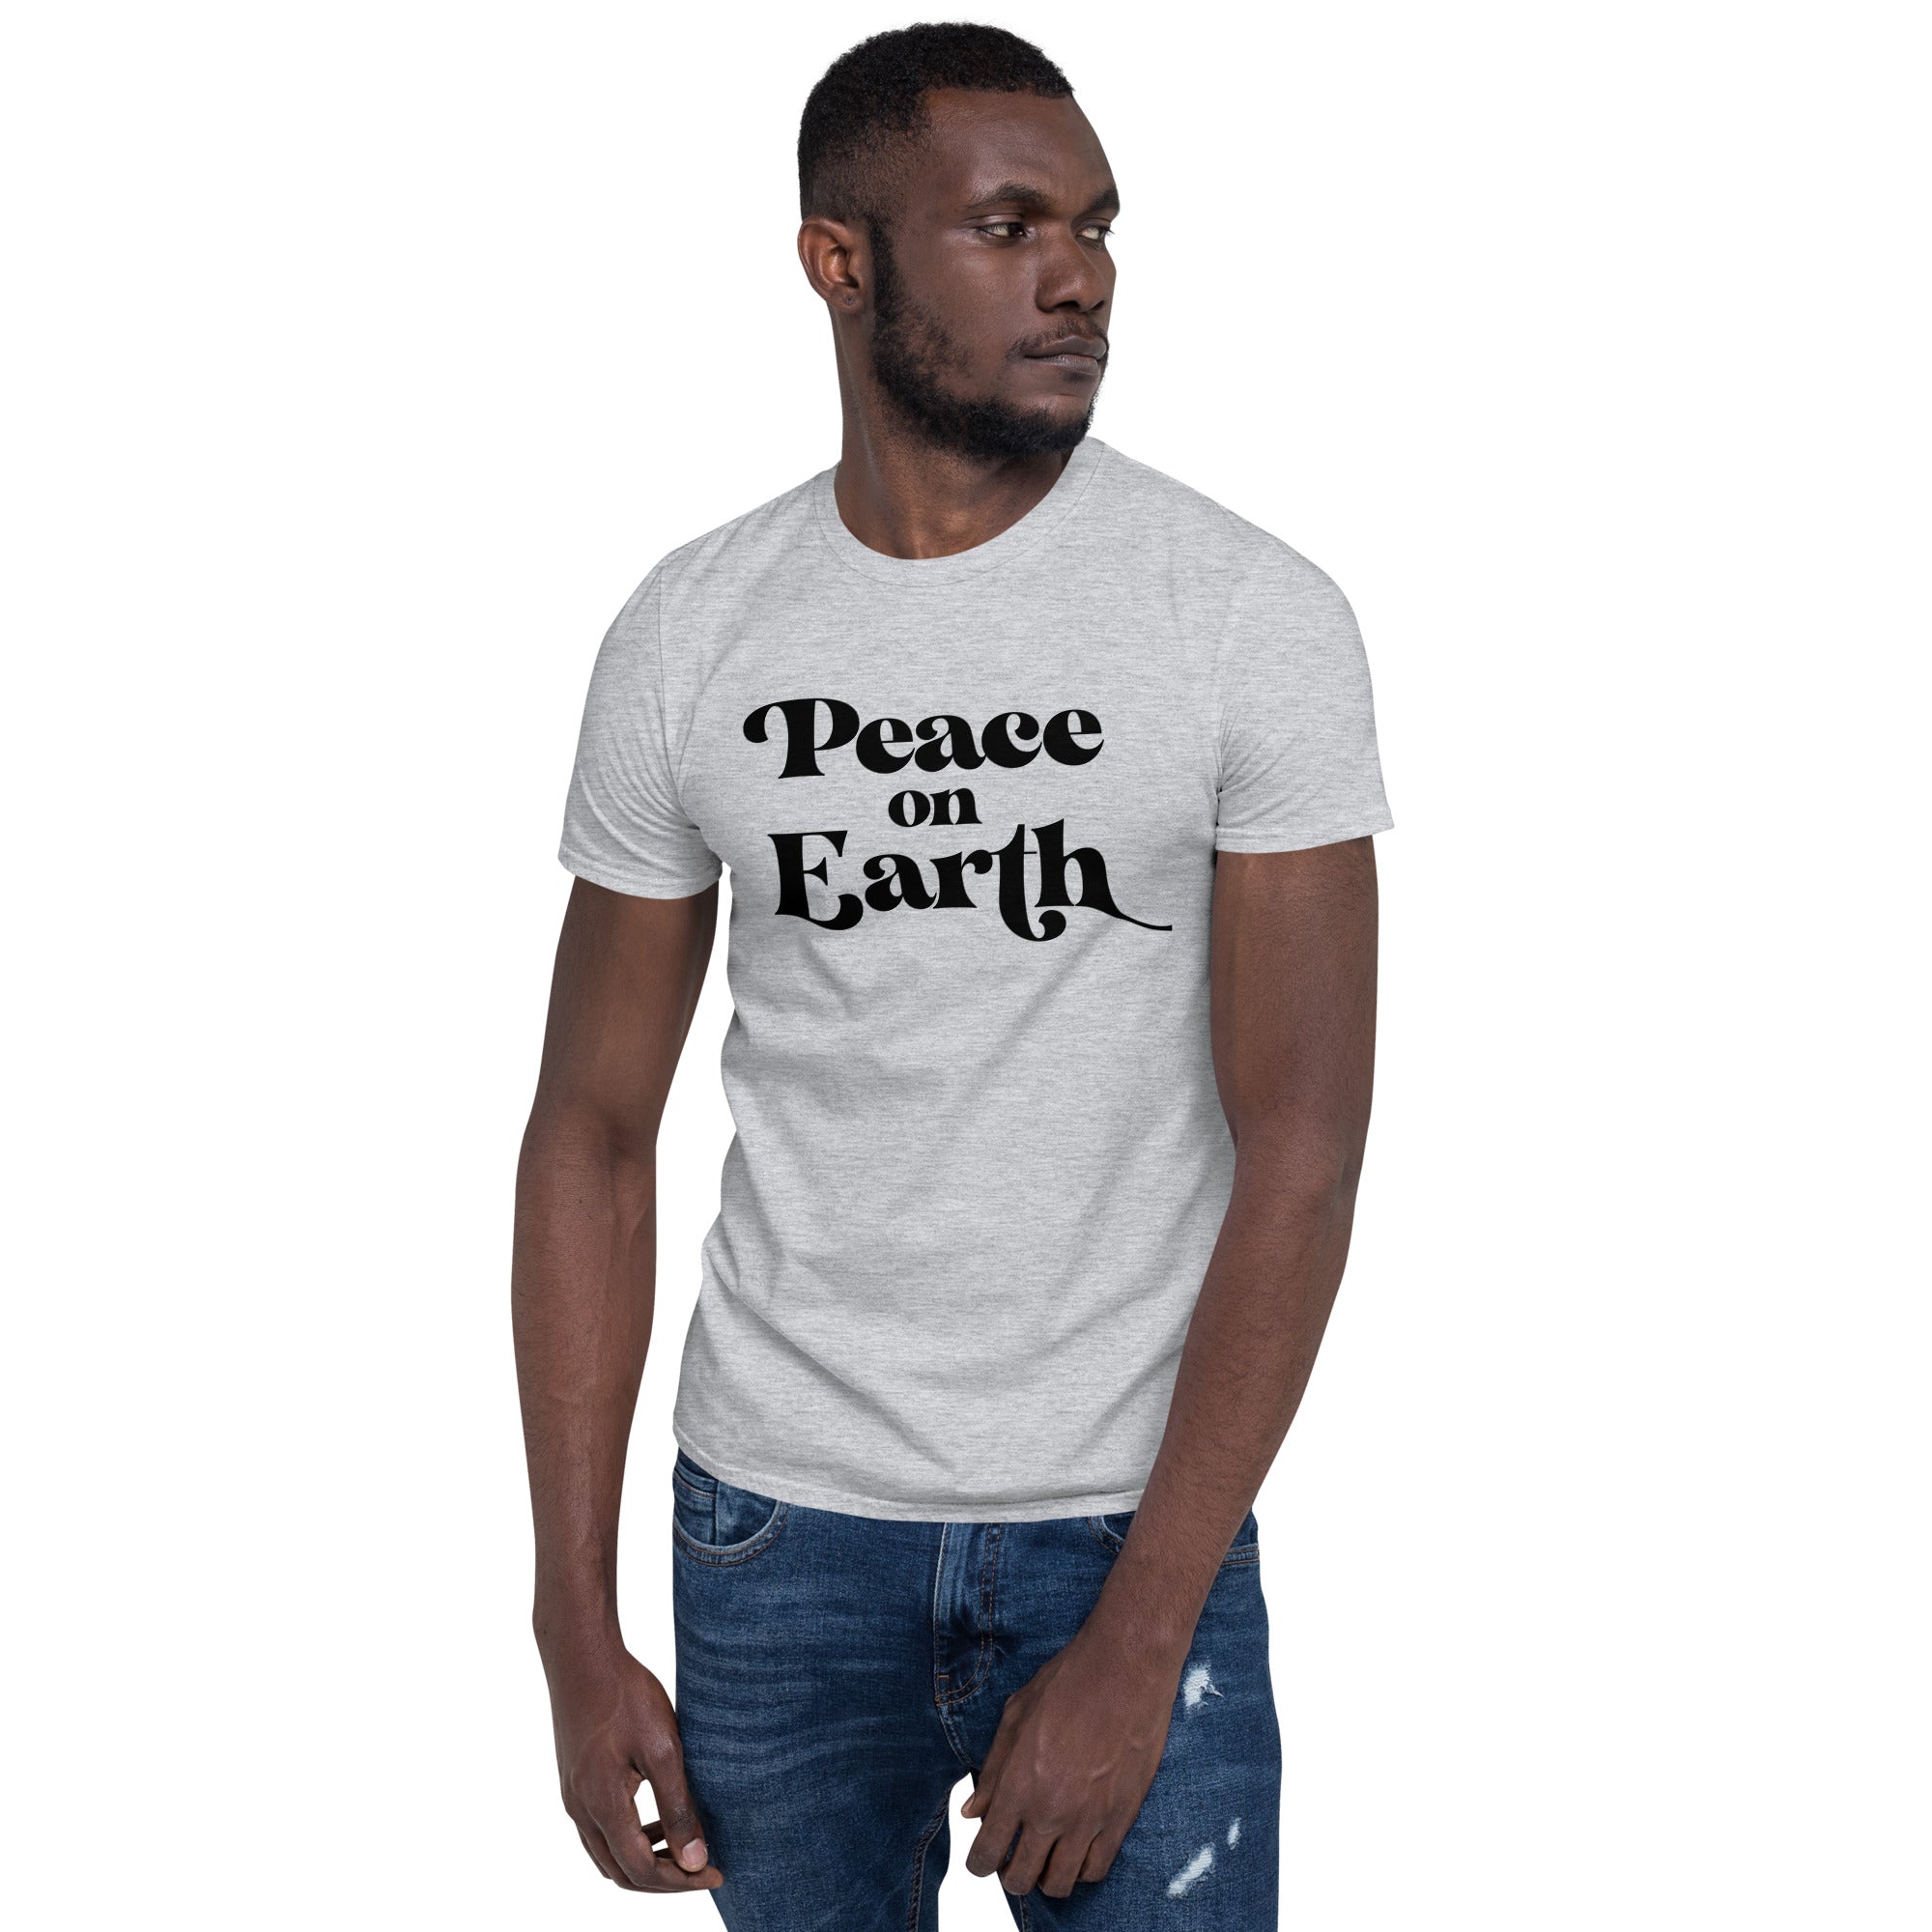 Peace On Earth - Short-Sleeve Unisex T-Shirt